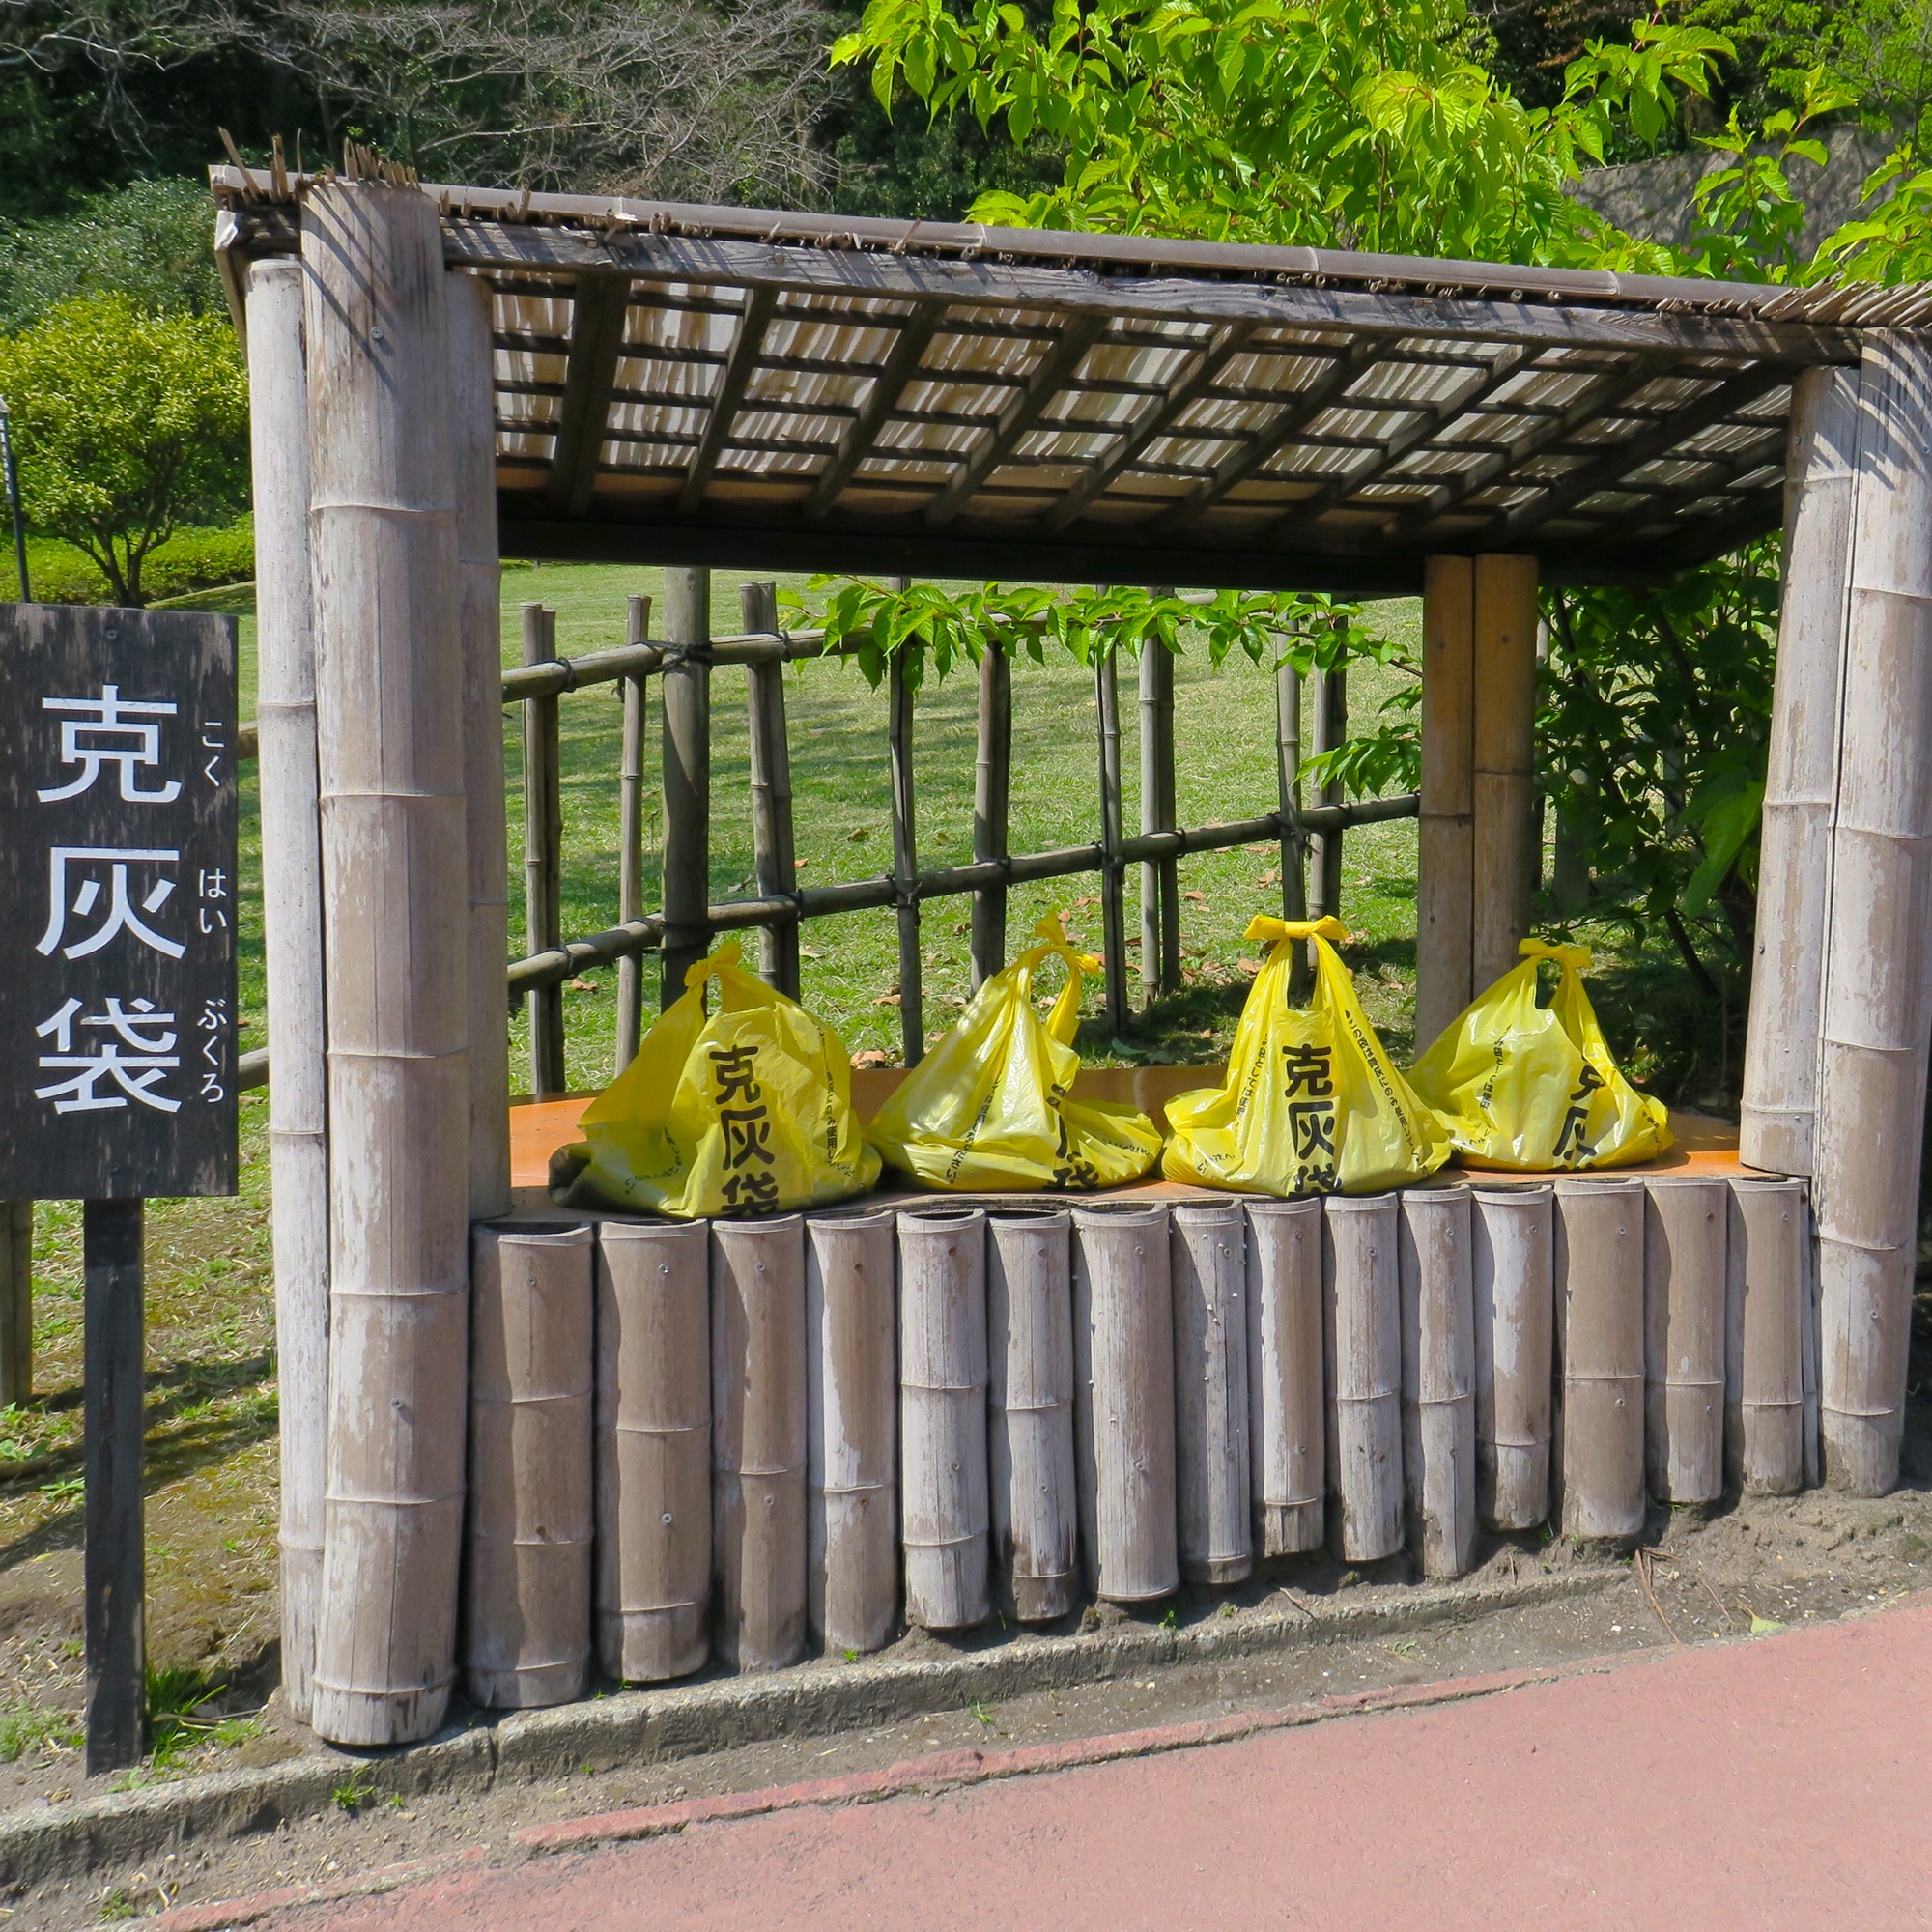 Eine Sammelstelle für Vulkanasche in Kagoshima.